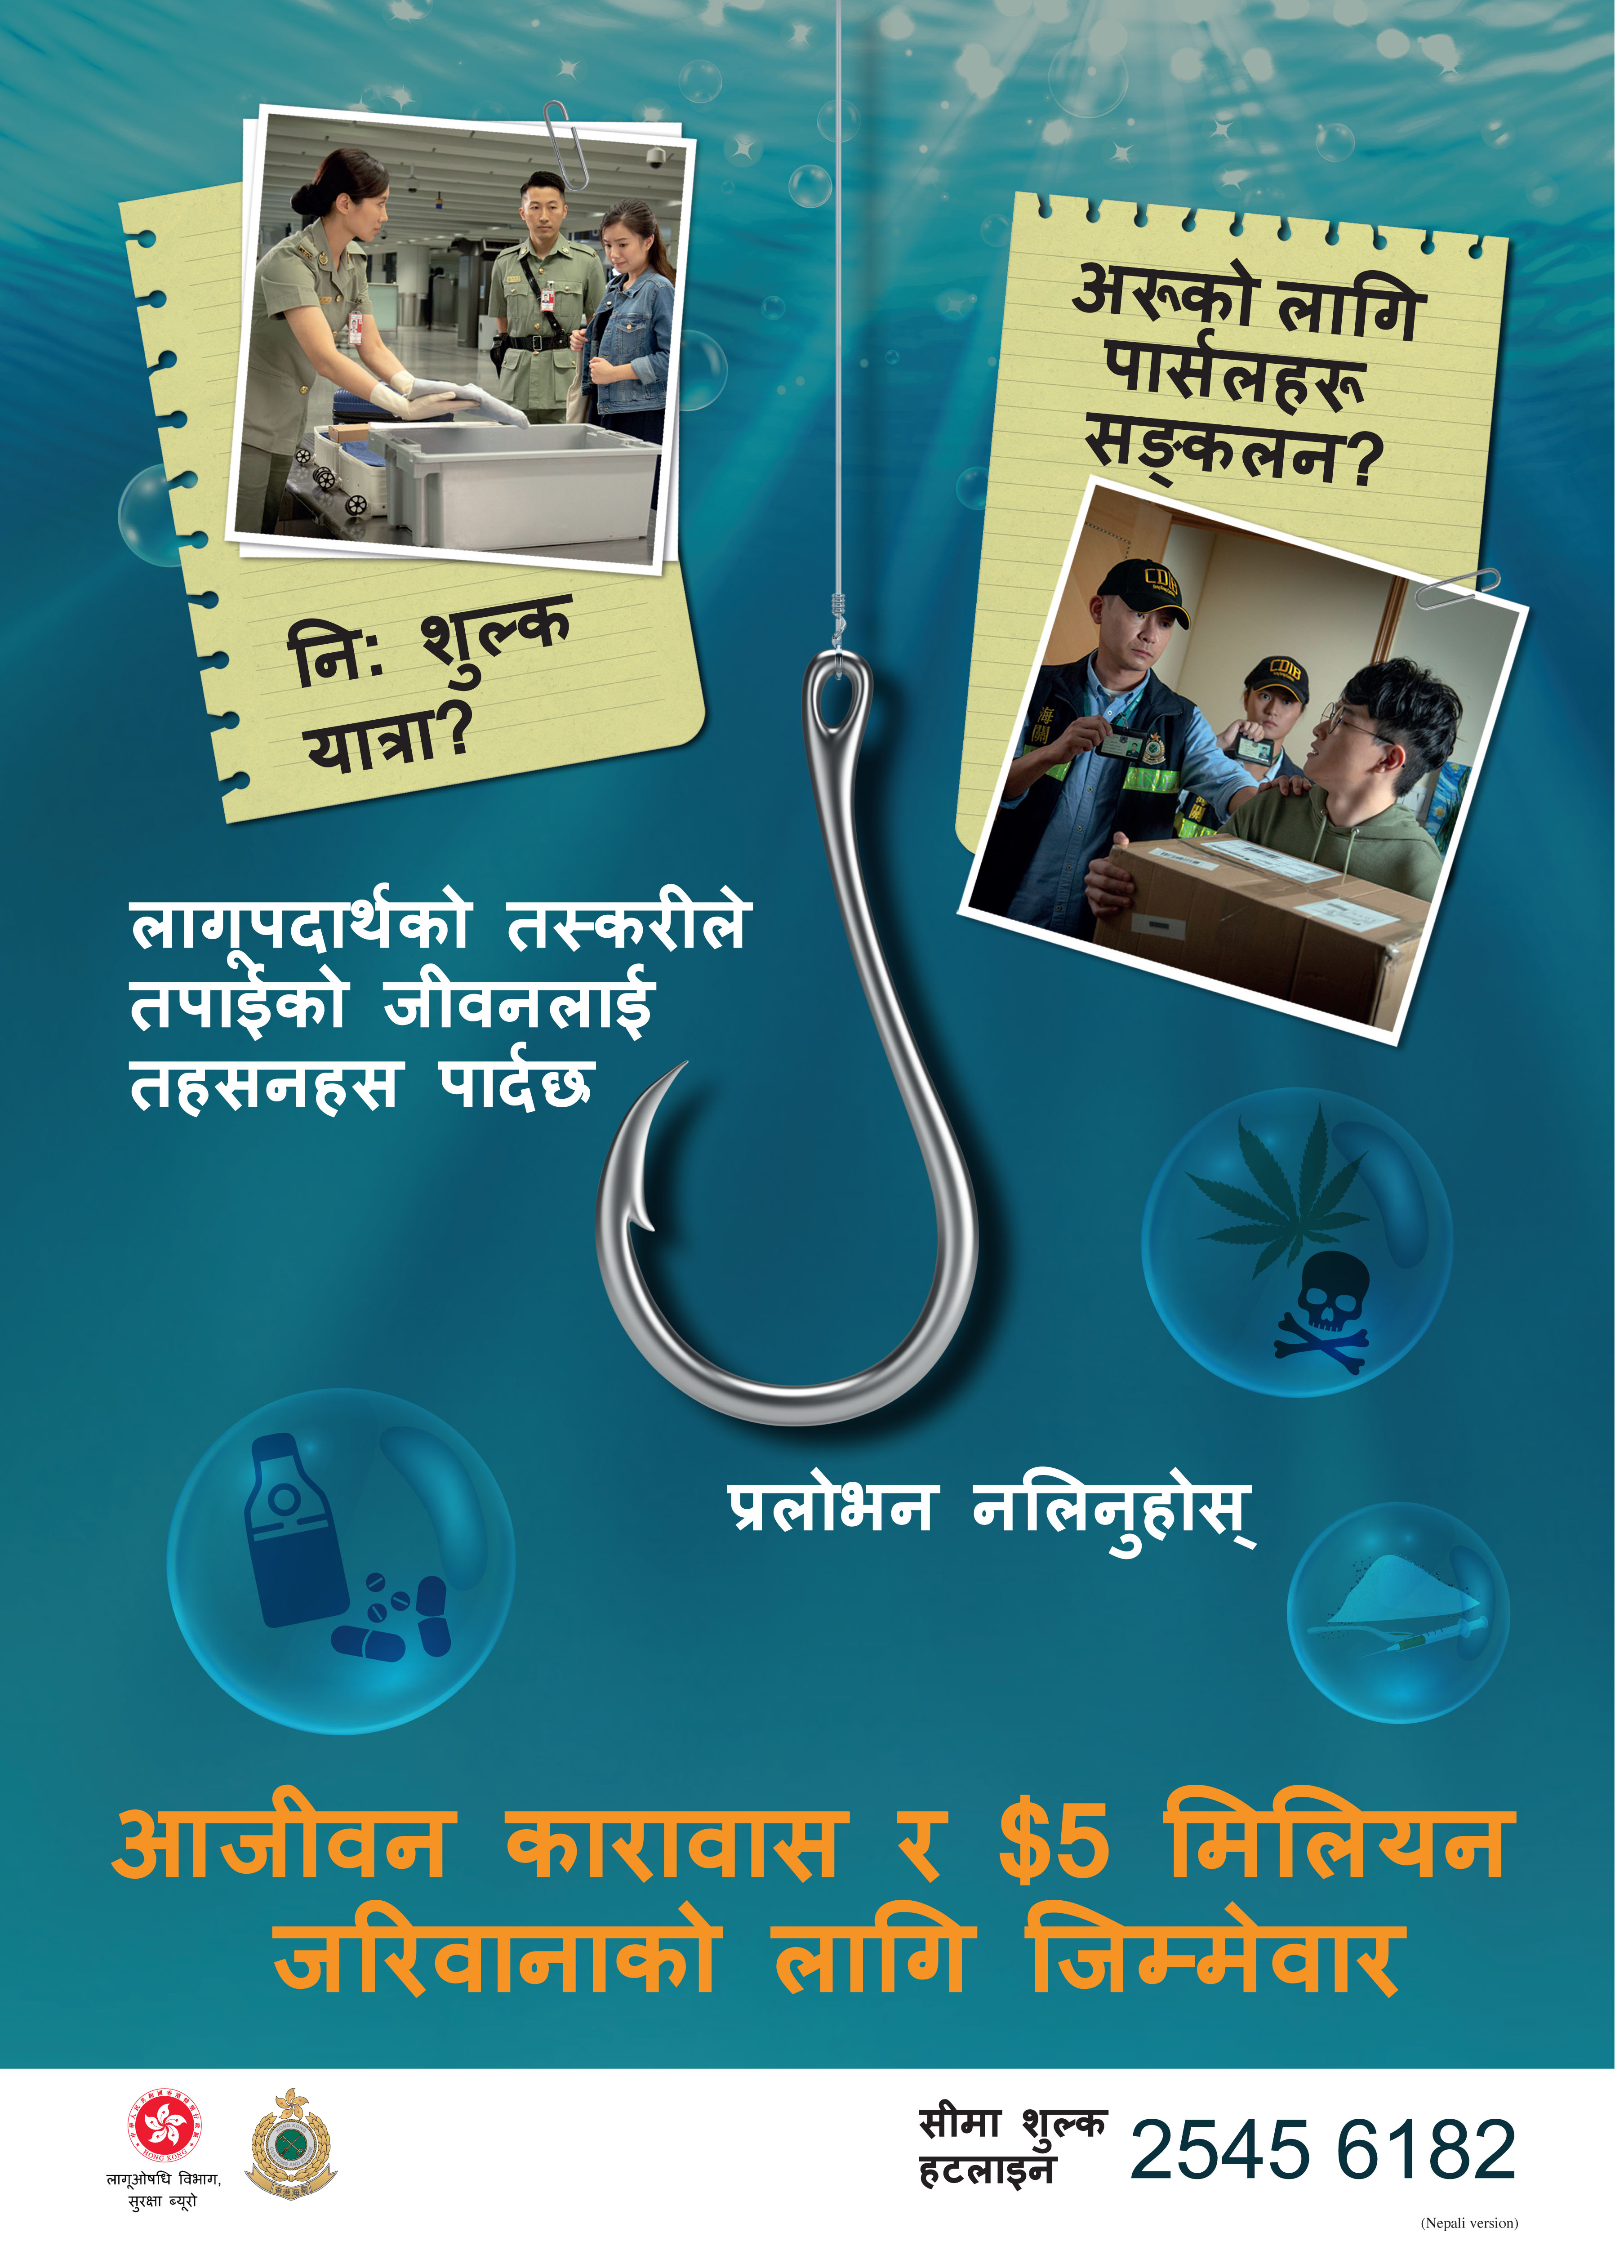 禁毒海報「販毒誘害，切勿上釣」- 尼泊爾文版本